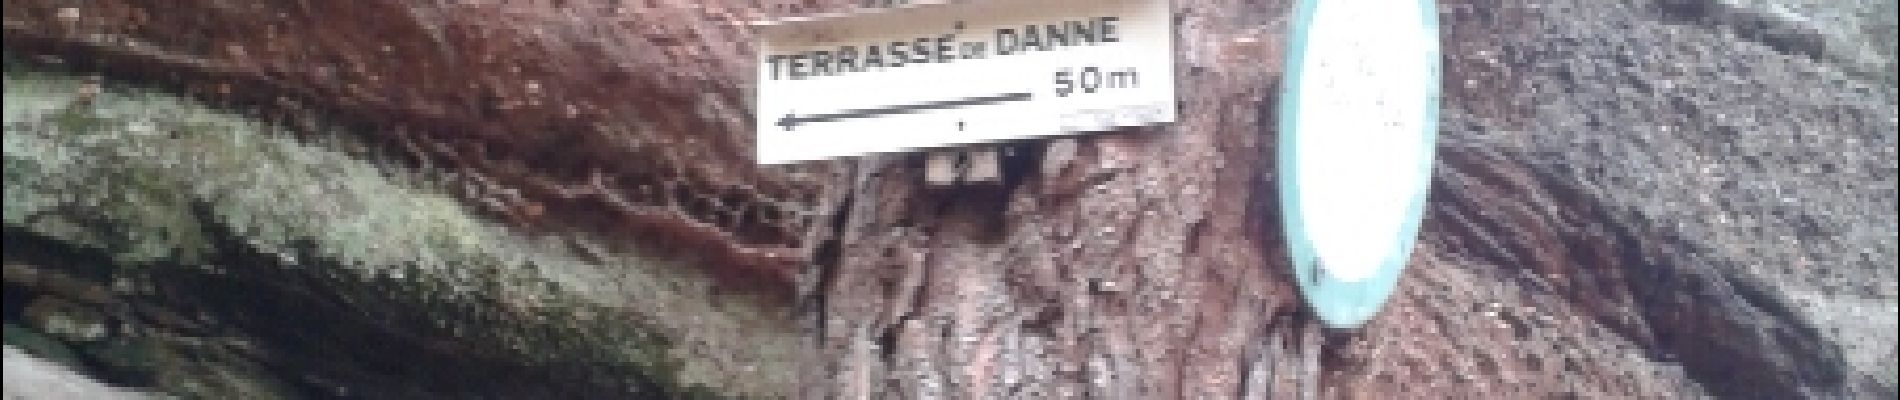 Punto de interés Danne-et-Quatre-Vents - terrasse de danne - Photo